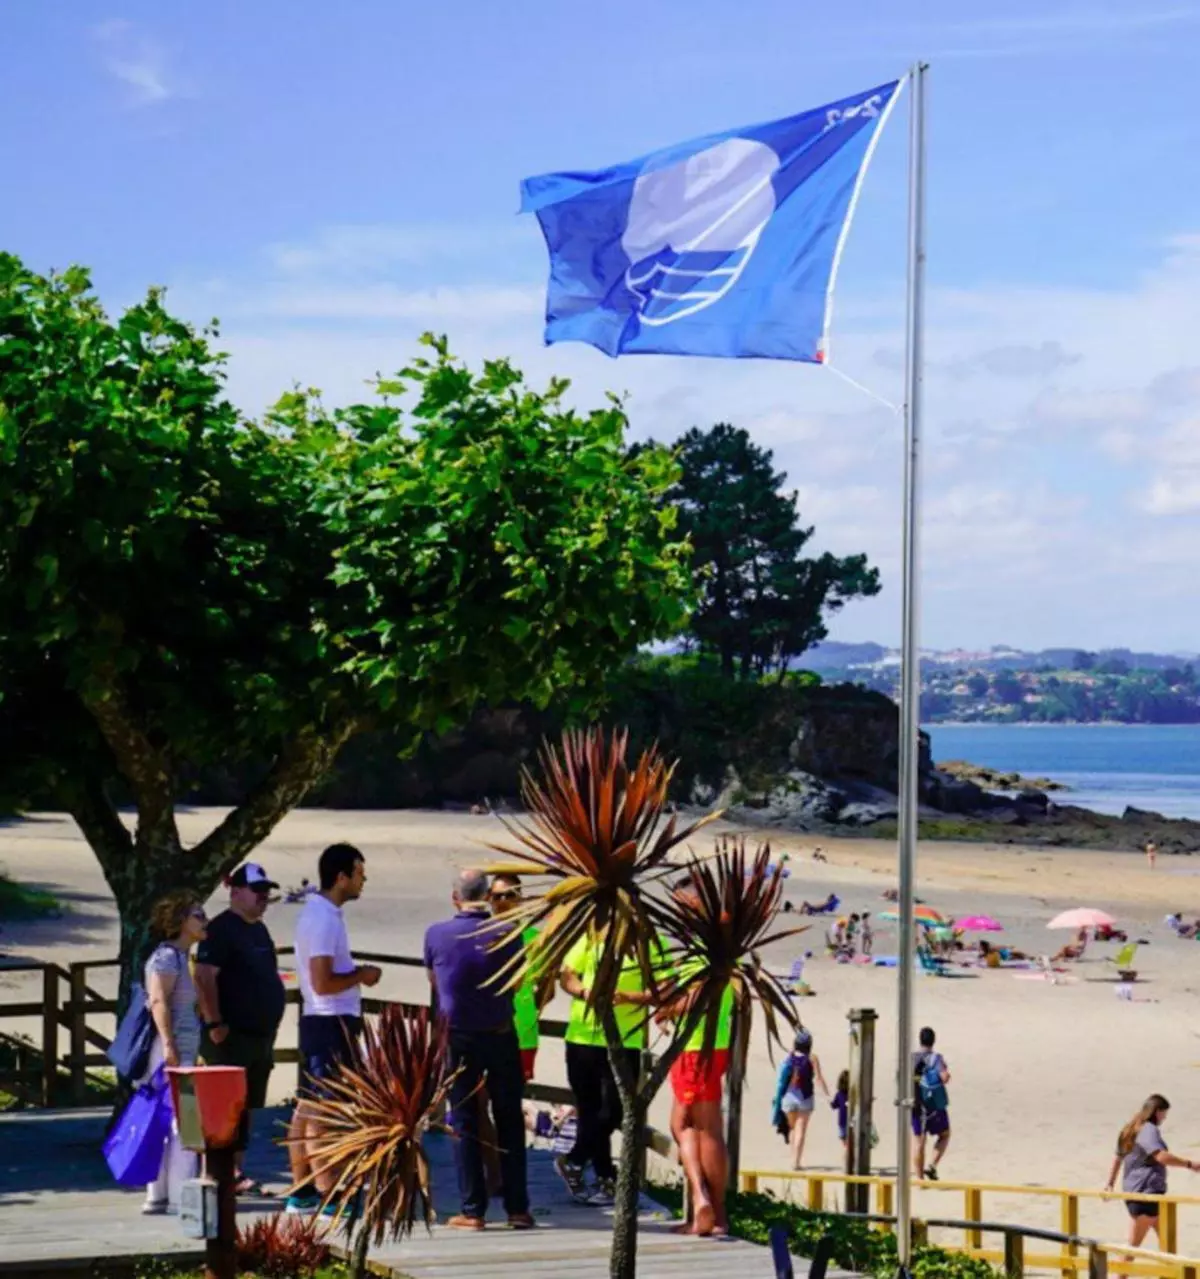 La playa de A Ribeira de Miño recupera la bandera azul que perdió en 2017